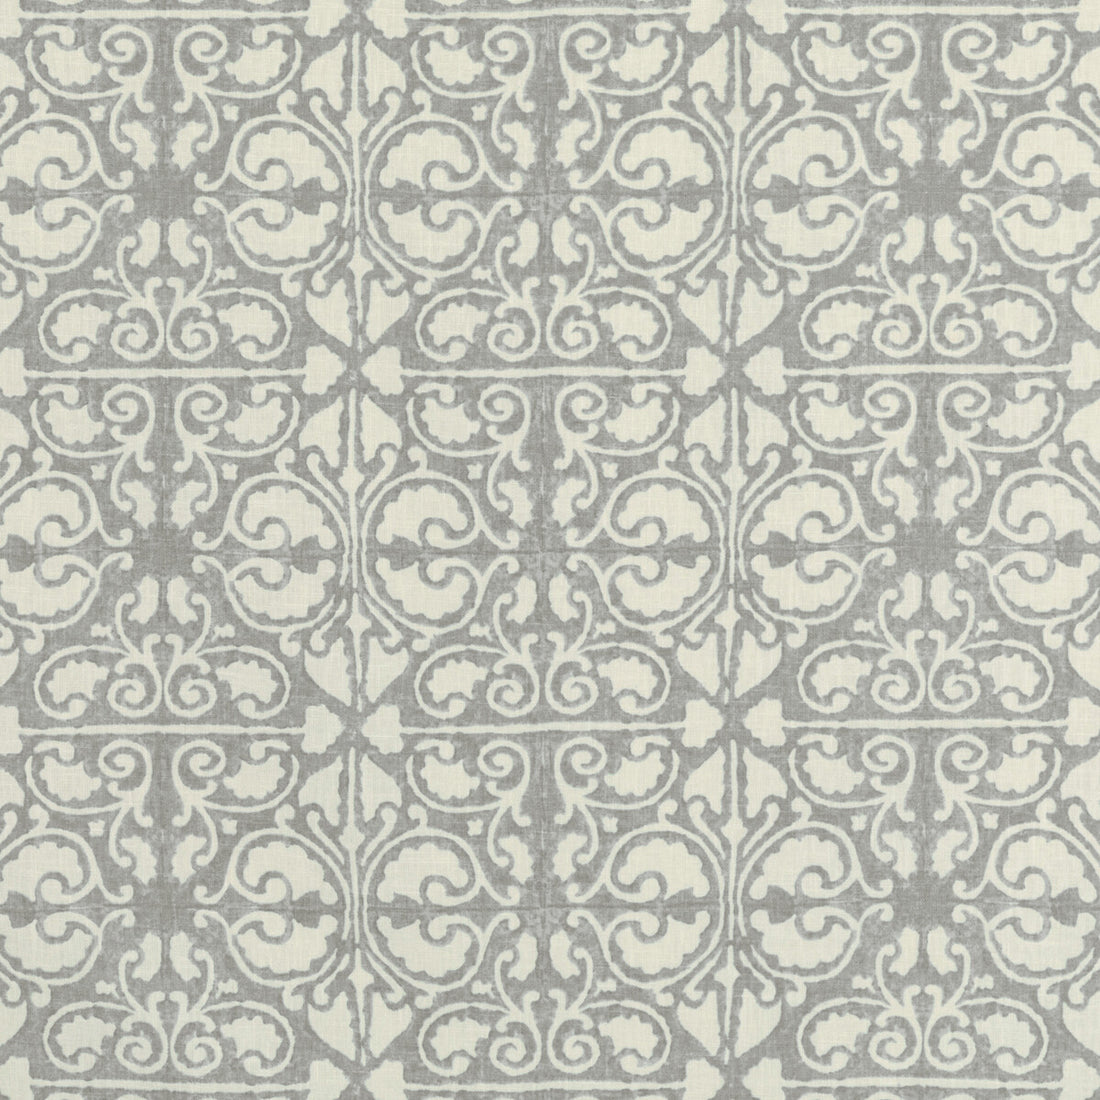 Kravet Basics fabric in agra tile-11 color - pattern AGRA TILE.11.0 - by Kravet Basics in the L&